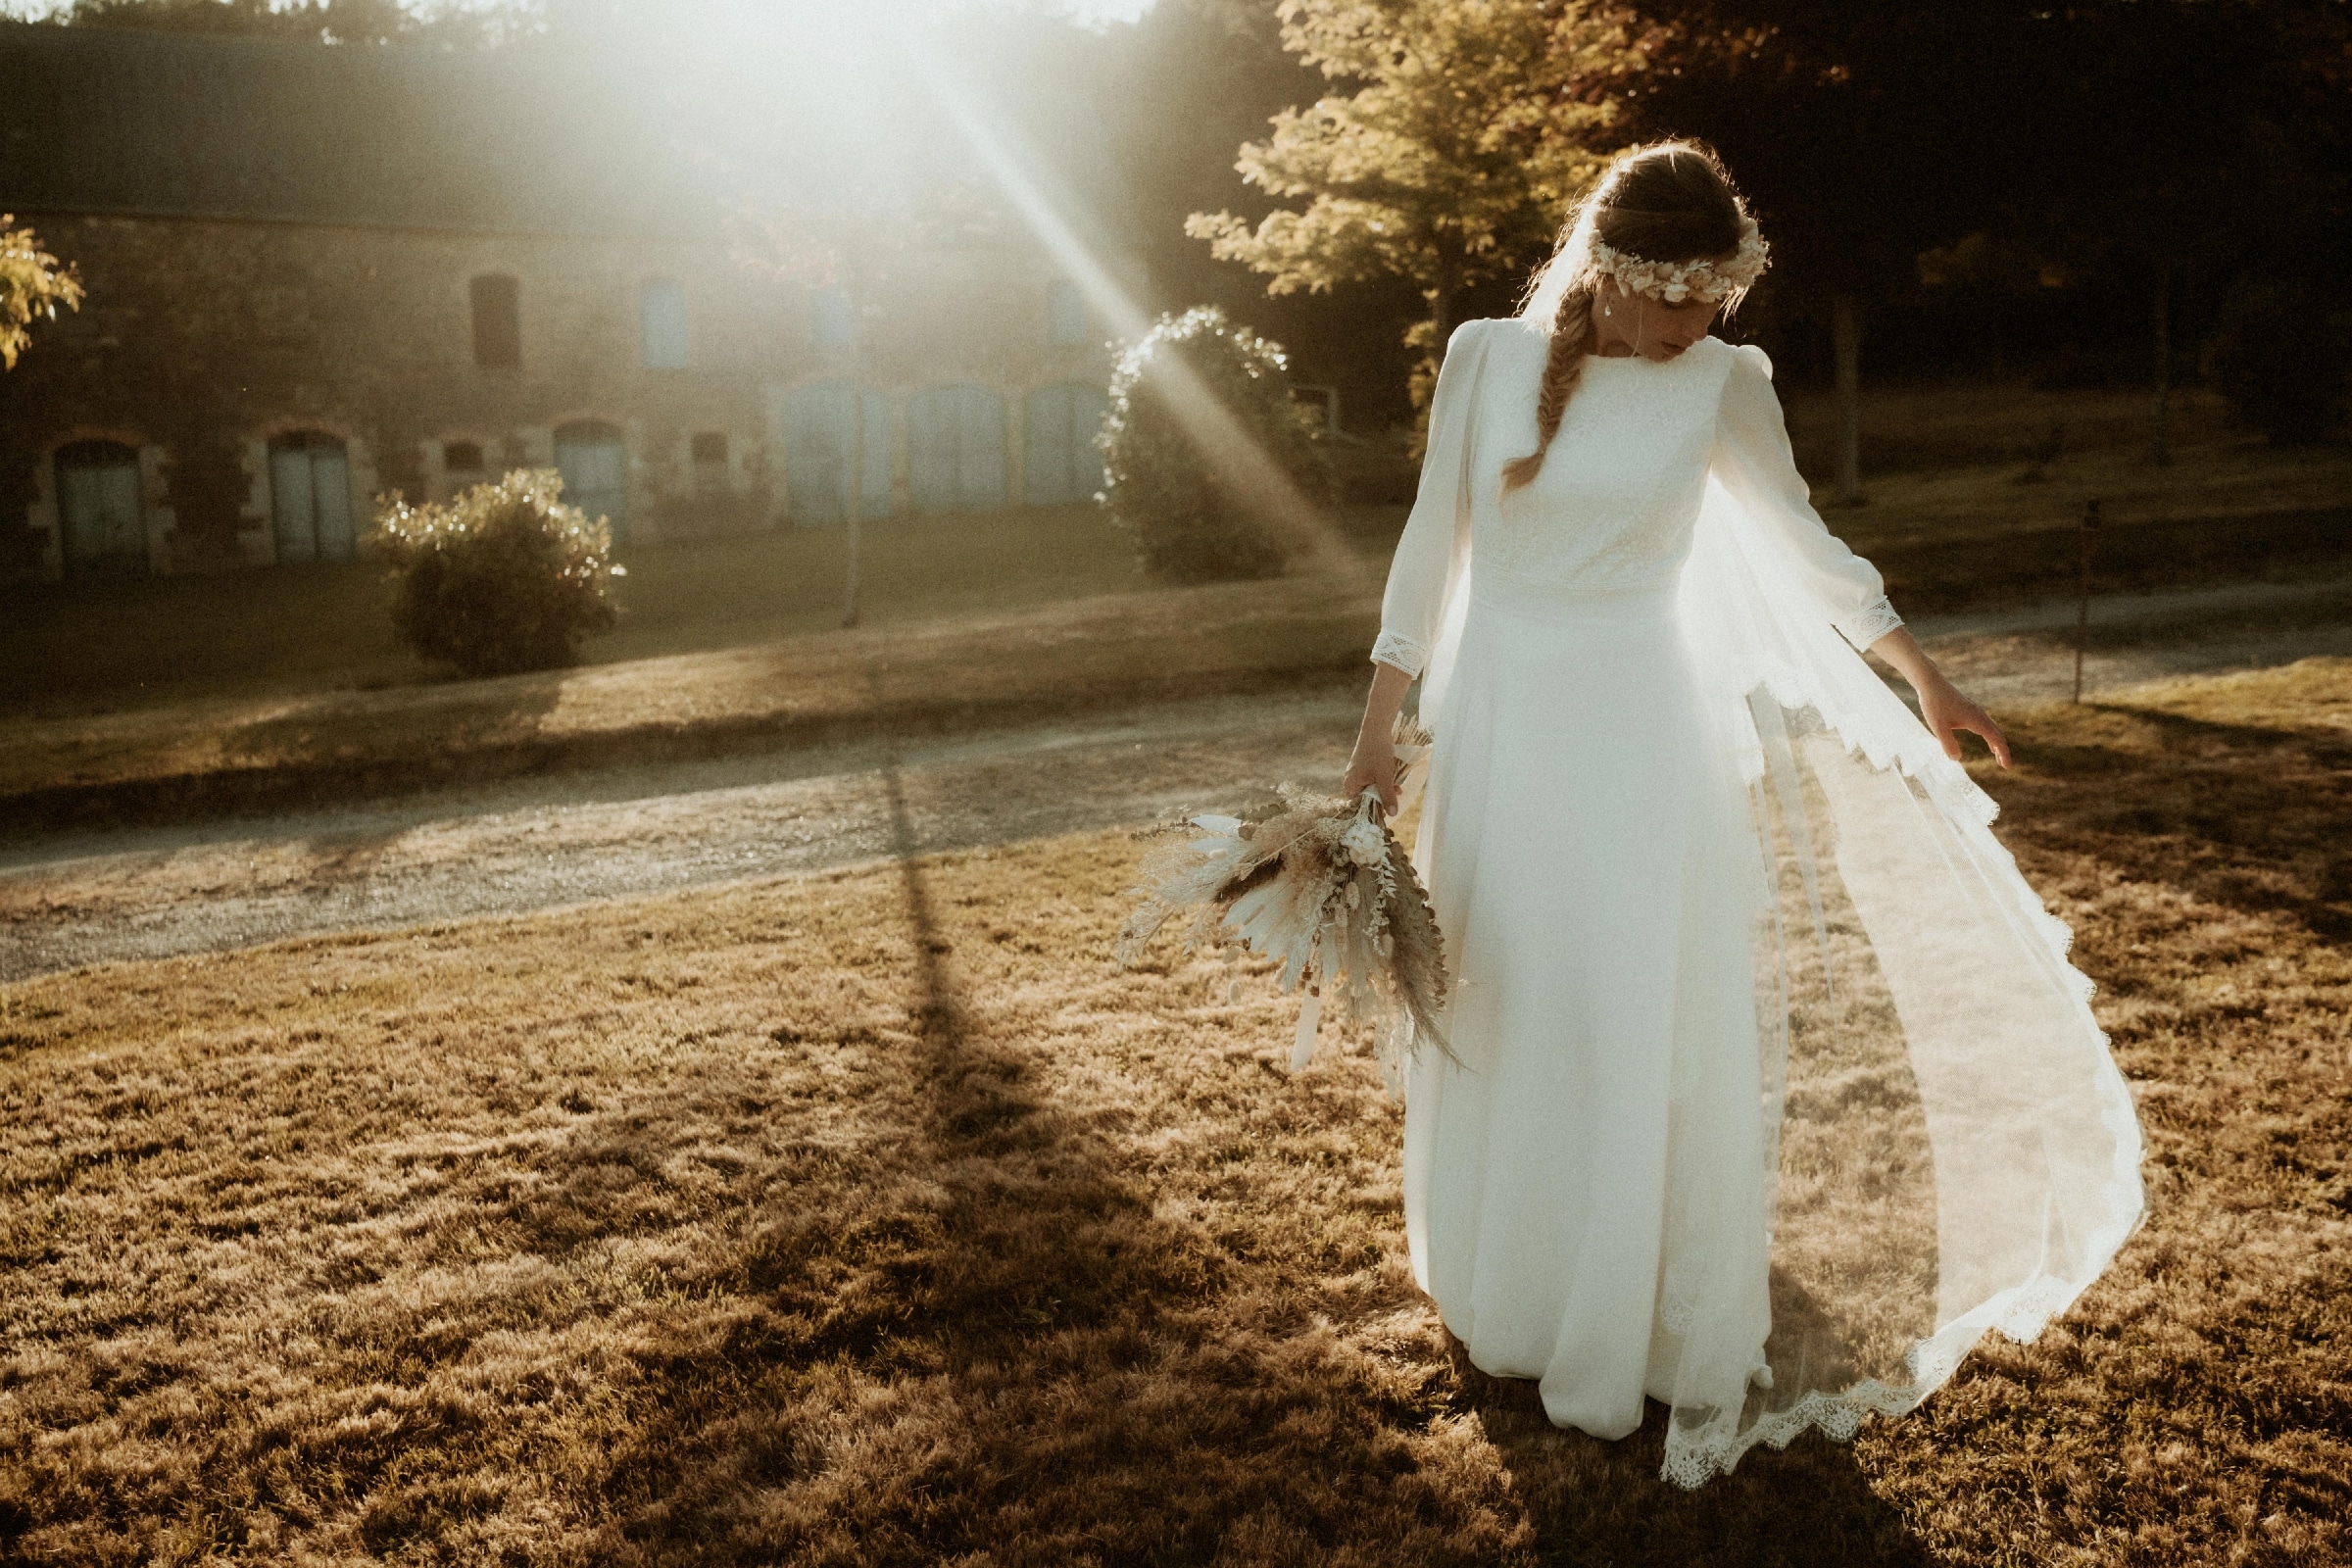 Margaux en robe de mariée, elle porte le voile anémone.